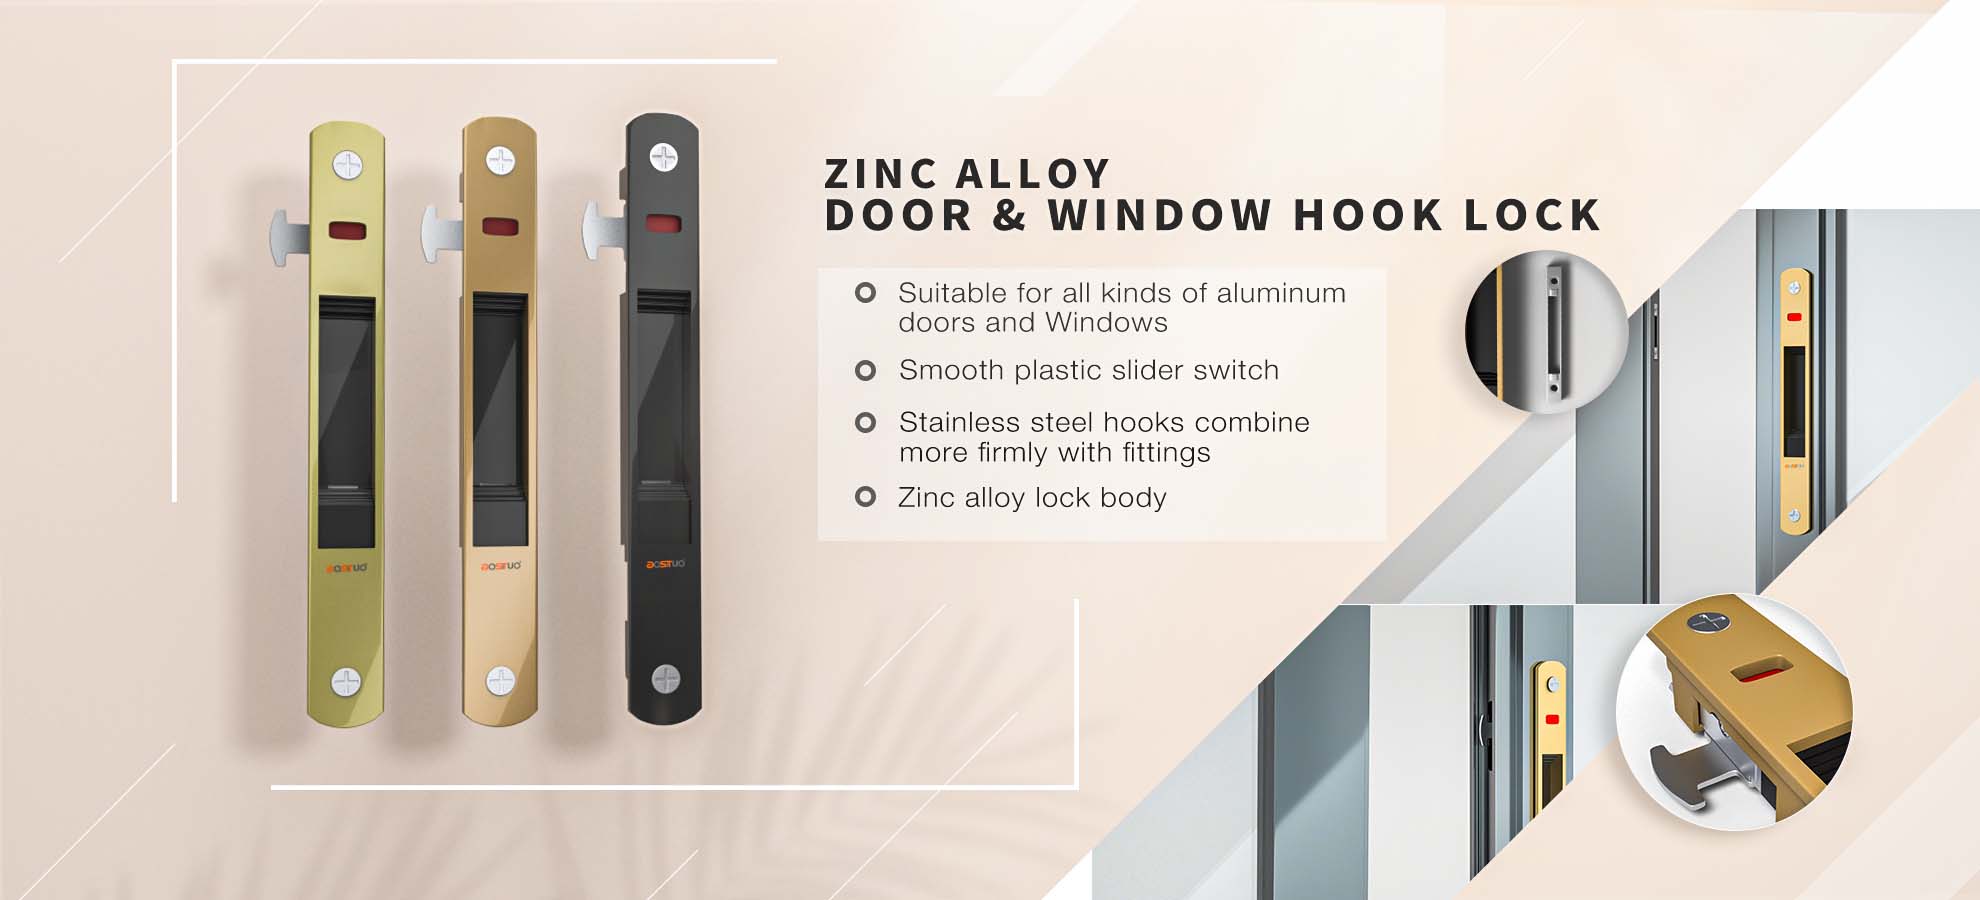 Door & Window Hook Lock